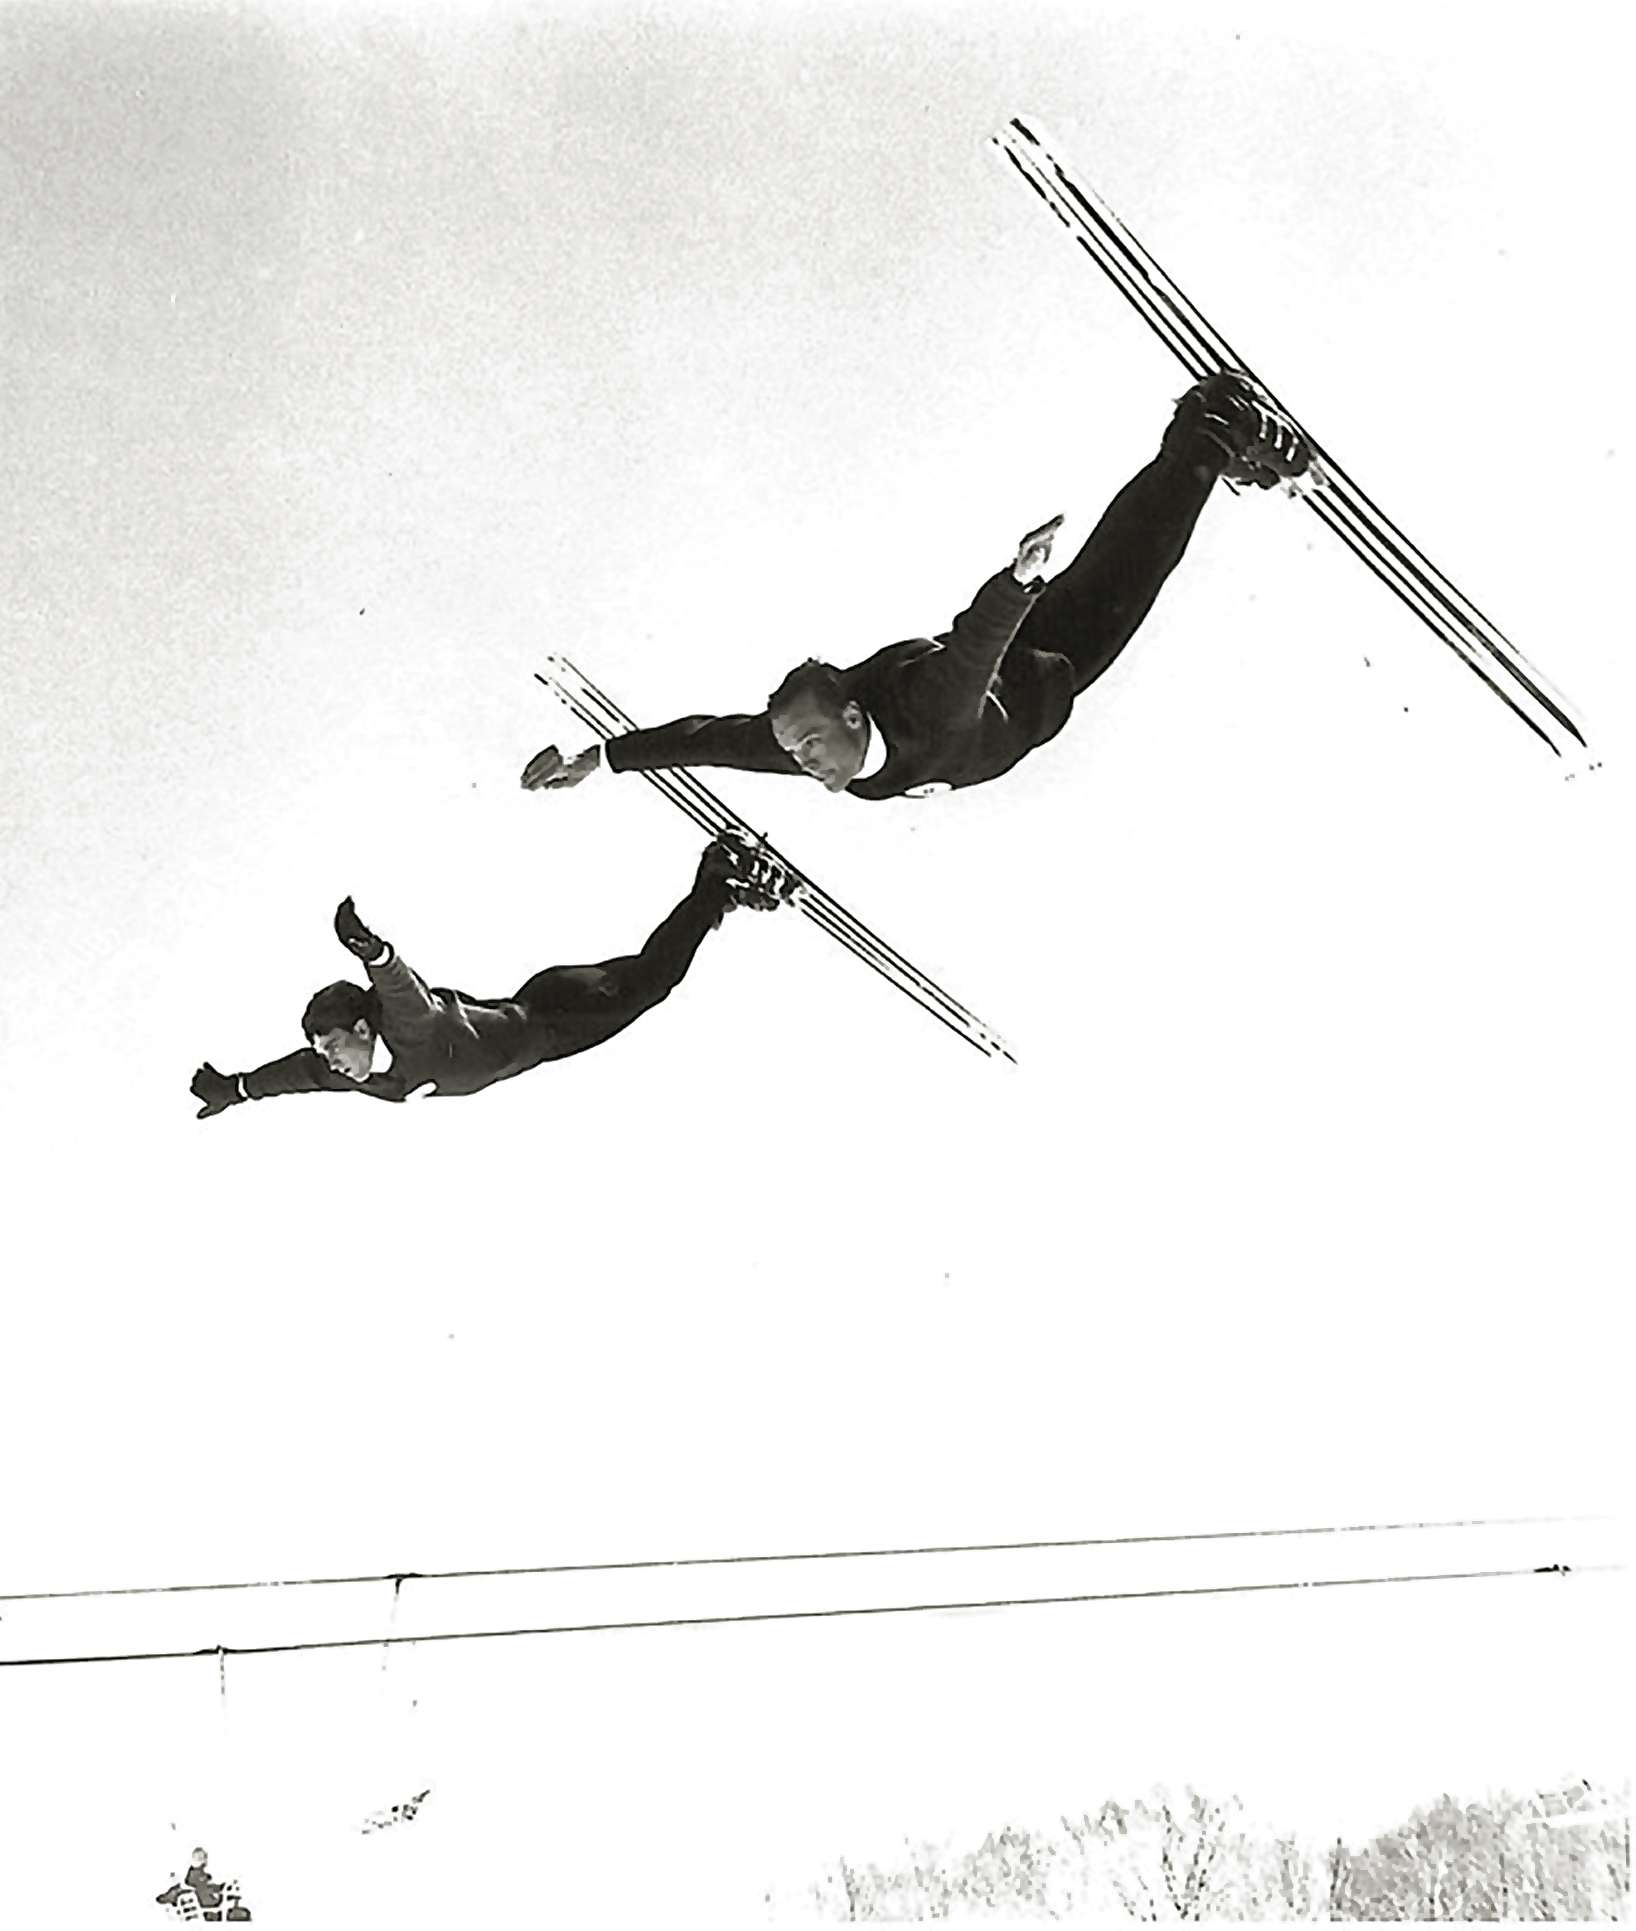 Hermann Goellner A Freestyle Skiing Pioneer